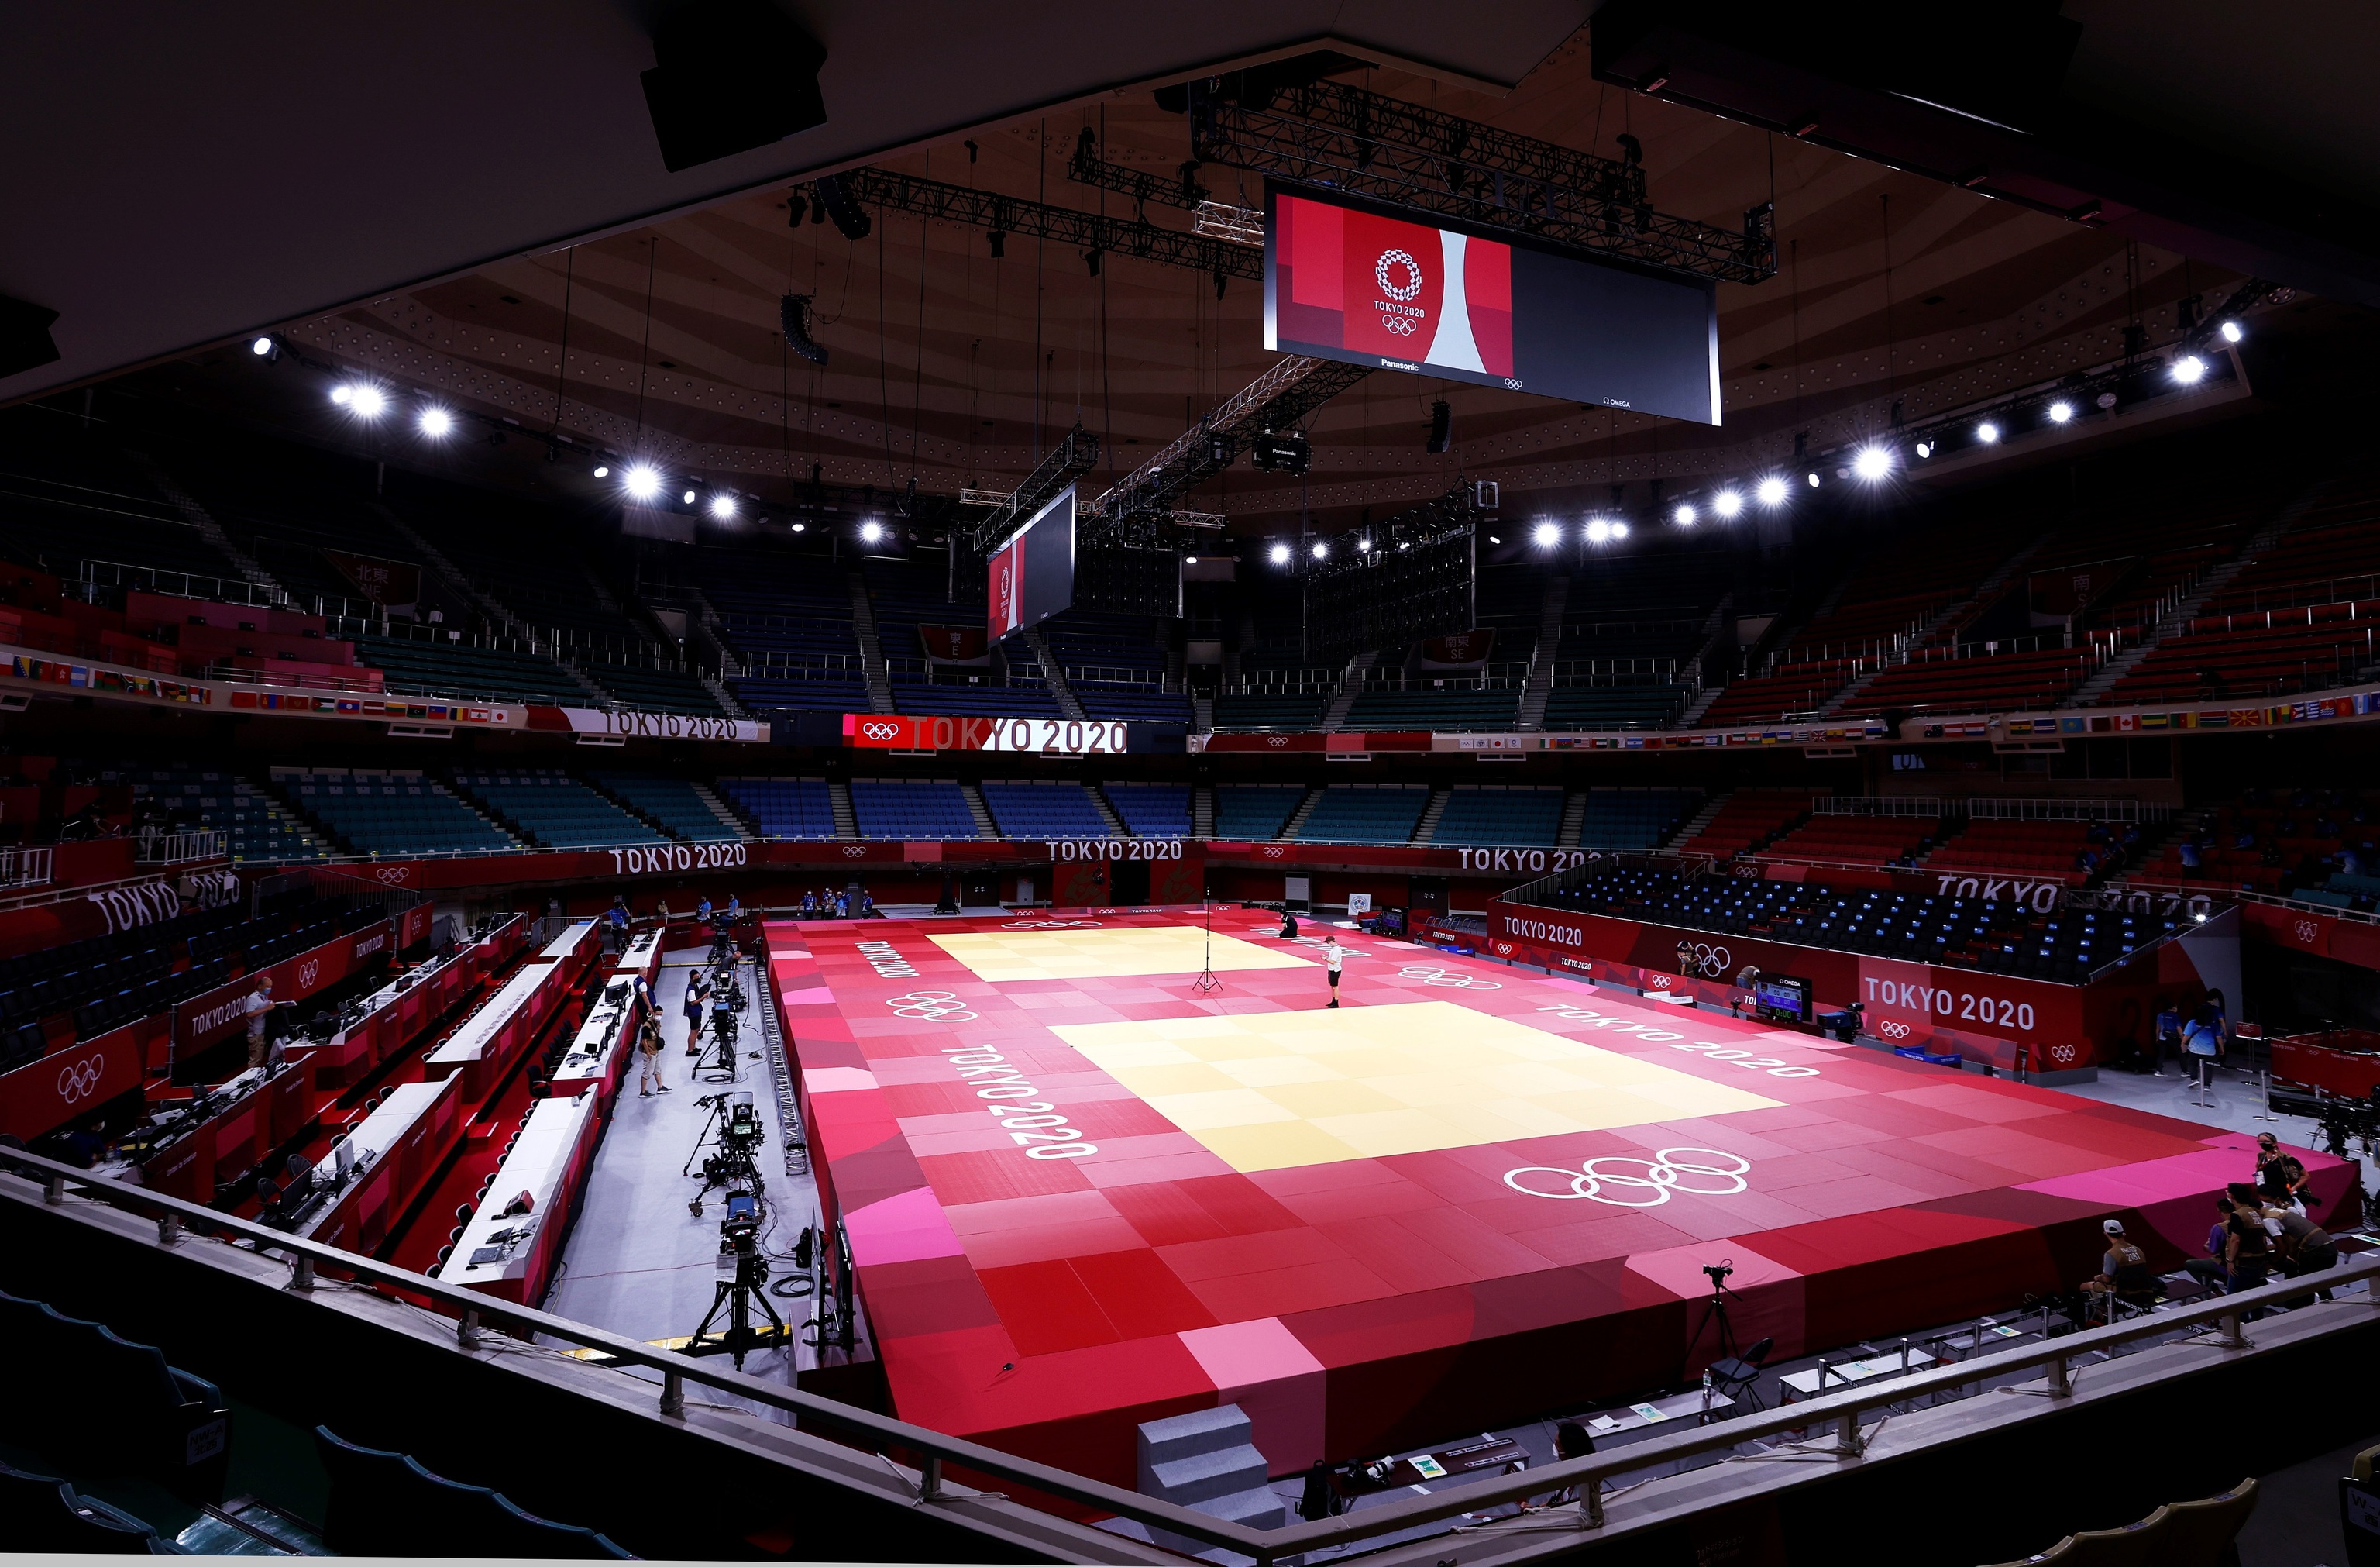 Vista general del interior del estadio Budokan el primer da del judo olmpico.